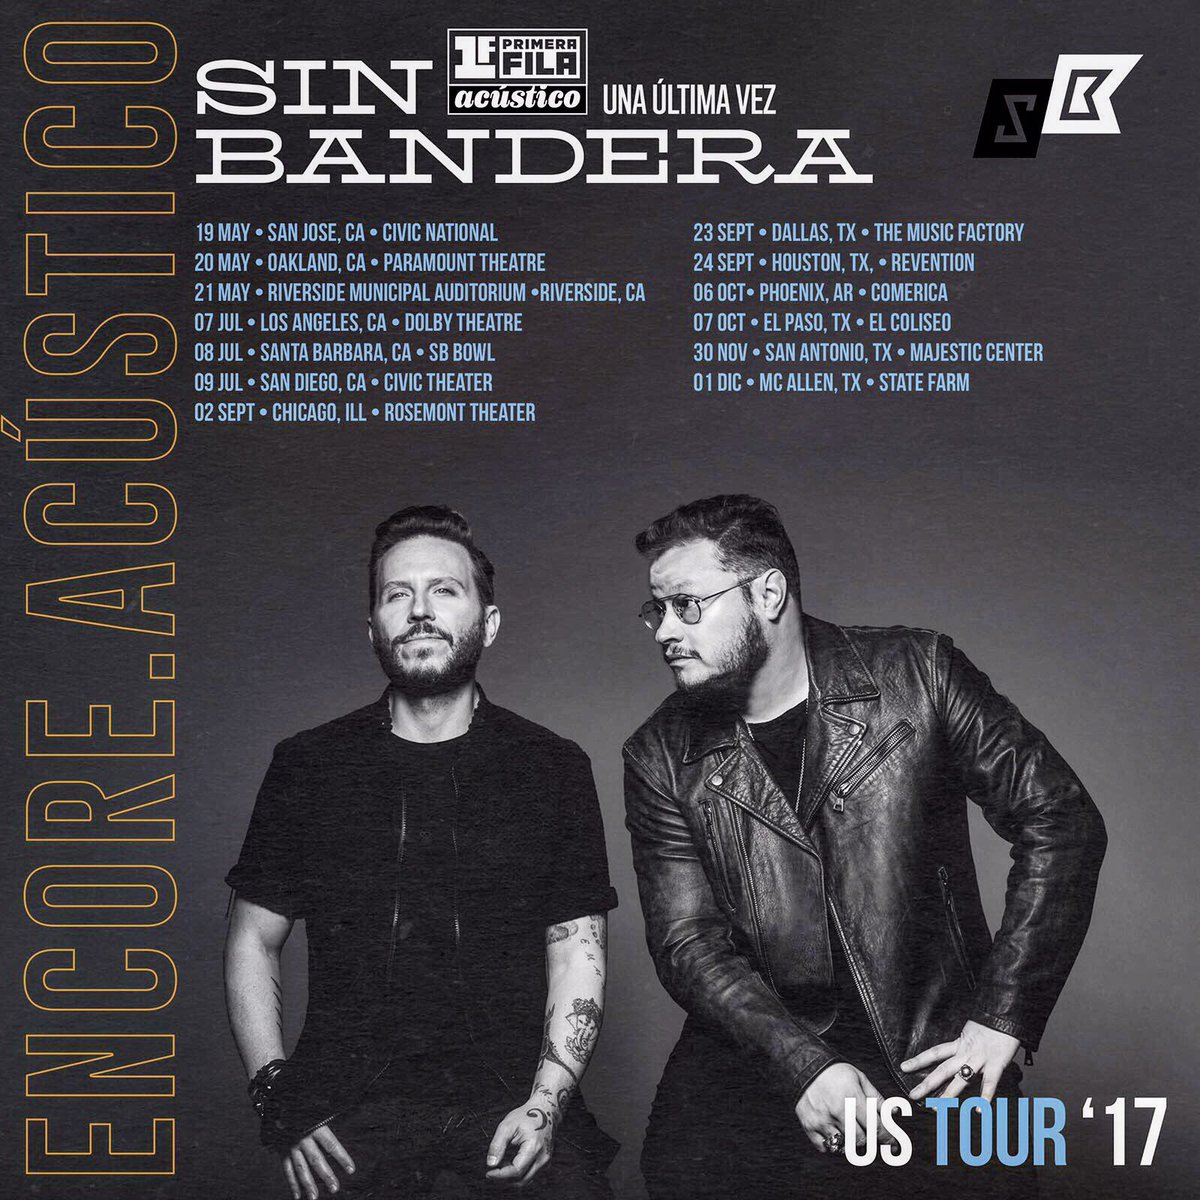 Concierto de Sin Bandera, Una Última Vez Tour, en Oakland, CA, Estados Unidos, Sábado, 20 de mayo de 2017